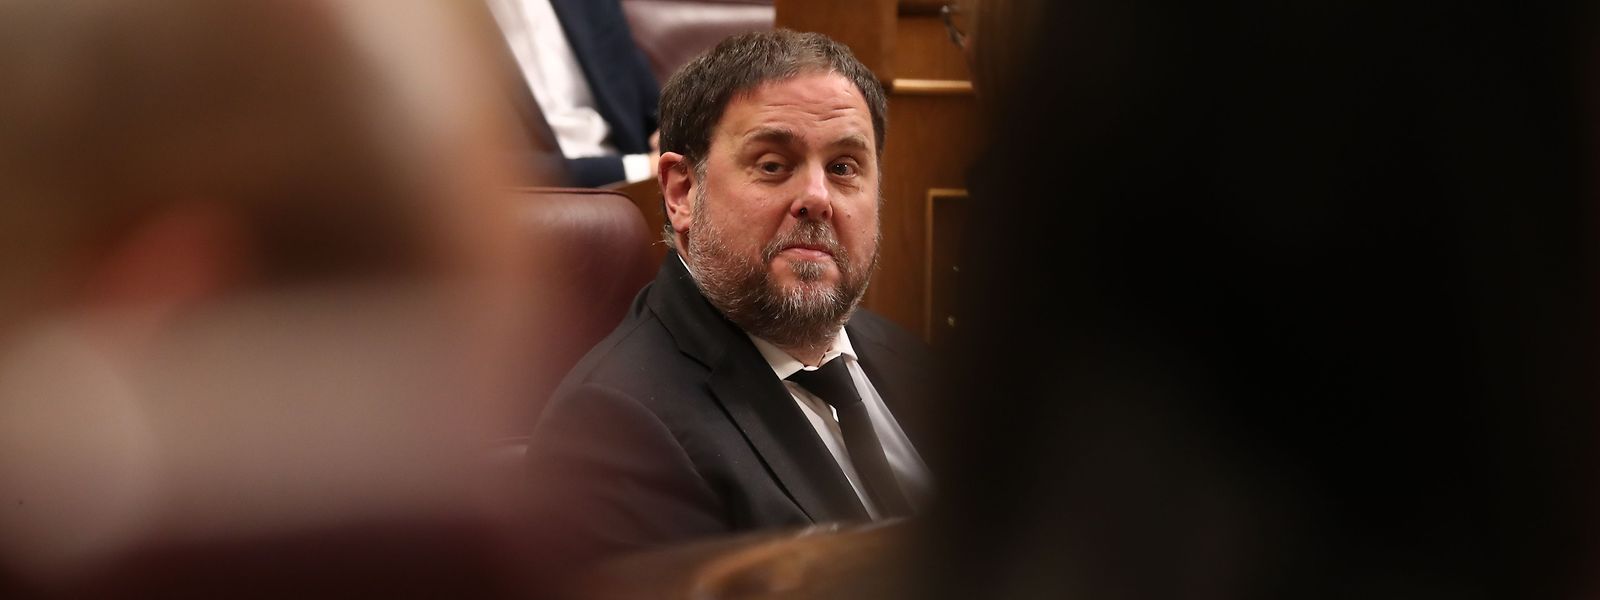 Der katalanische Separatistenführer Oriol Junqueras wurde zu Unrecht verurteilt, so das Urteil der Richter am Europäischen Gerichtshof am Donnerstag.